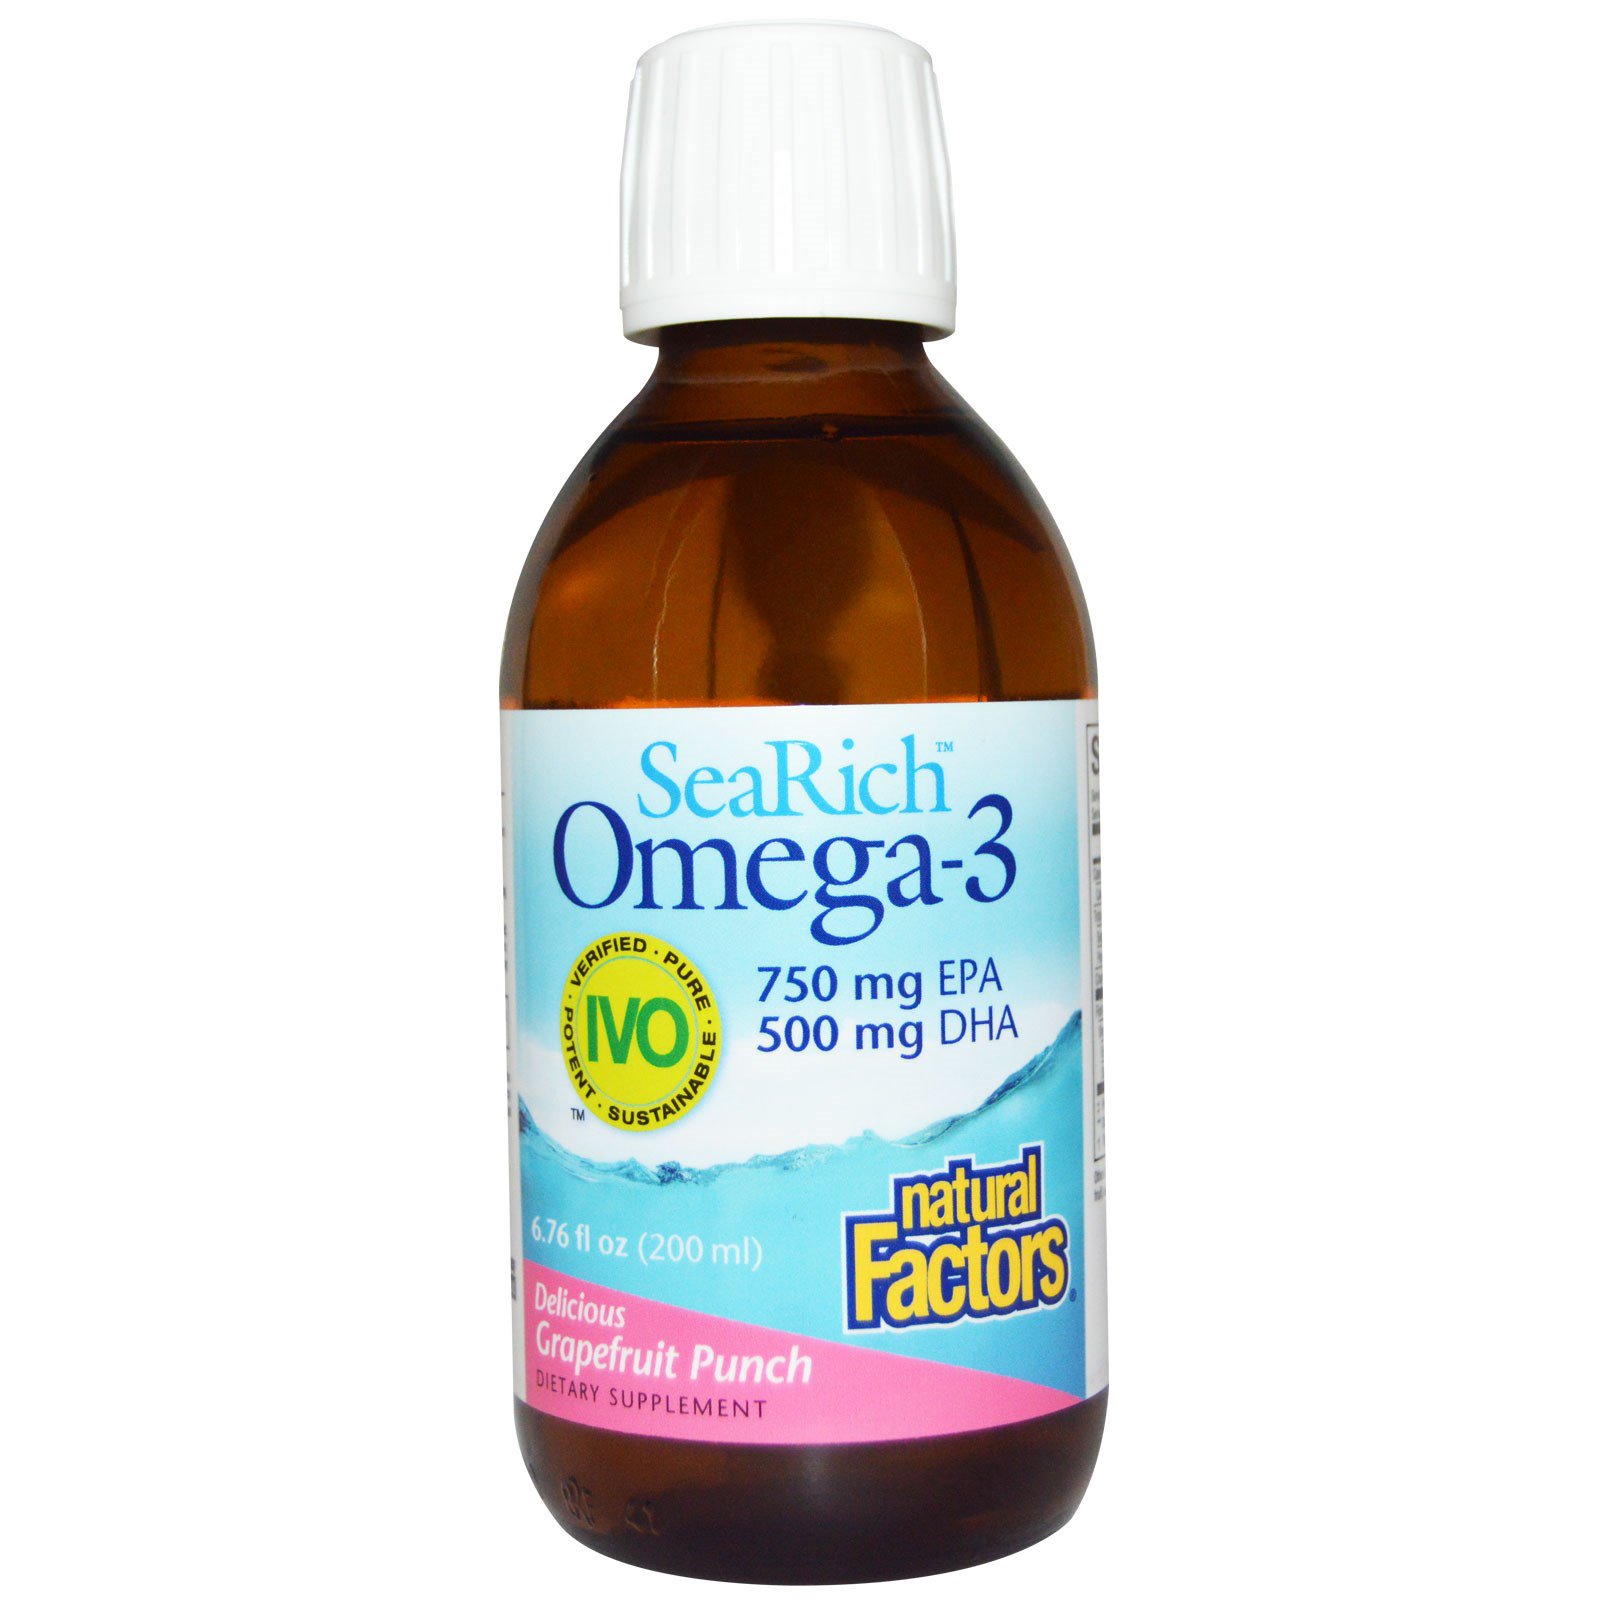 omega 3 750